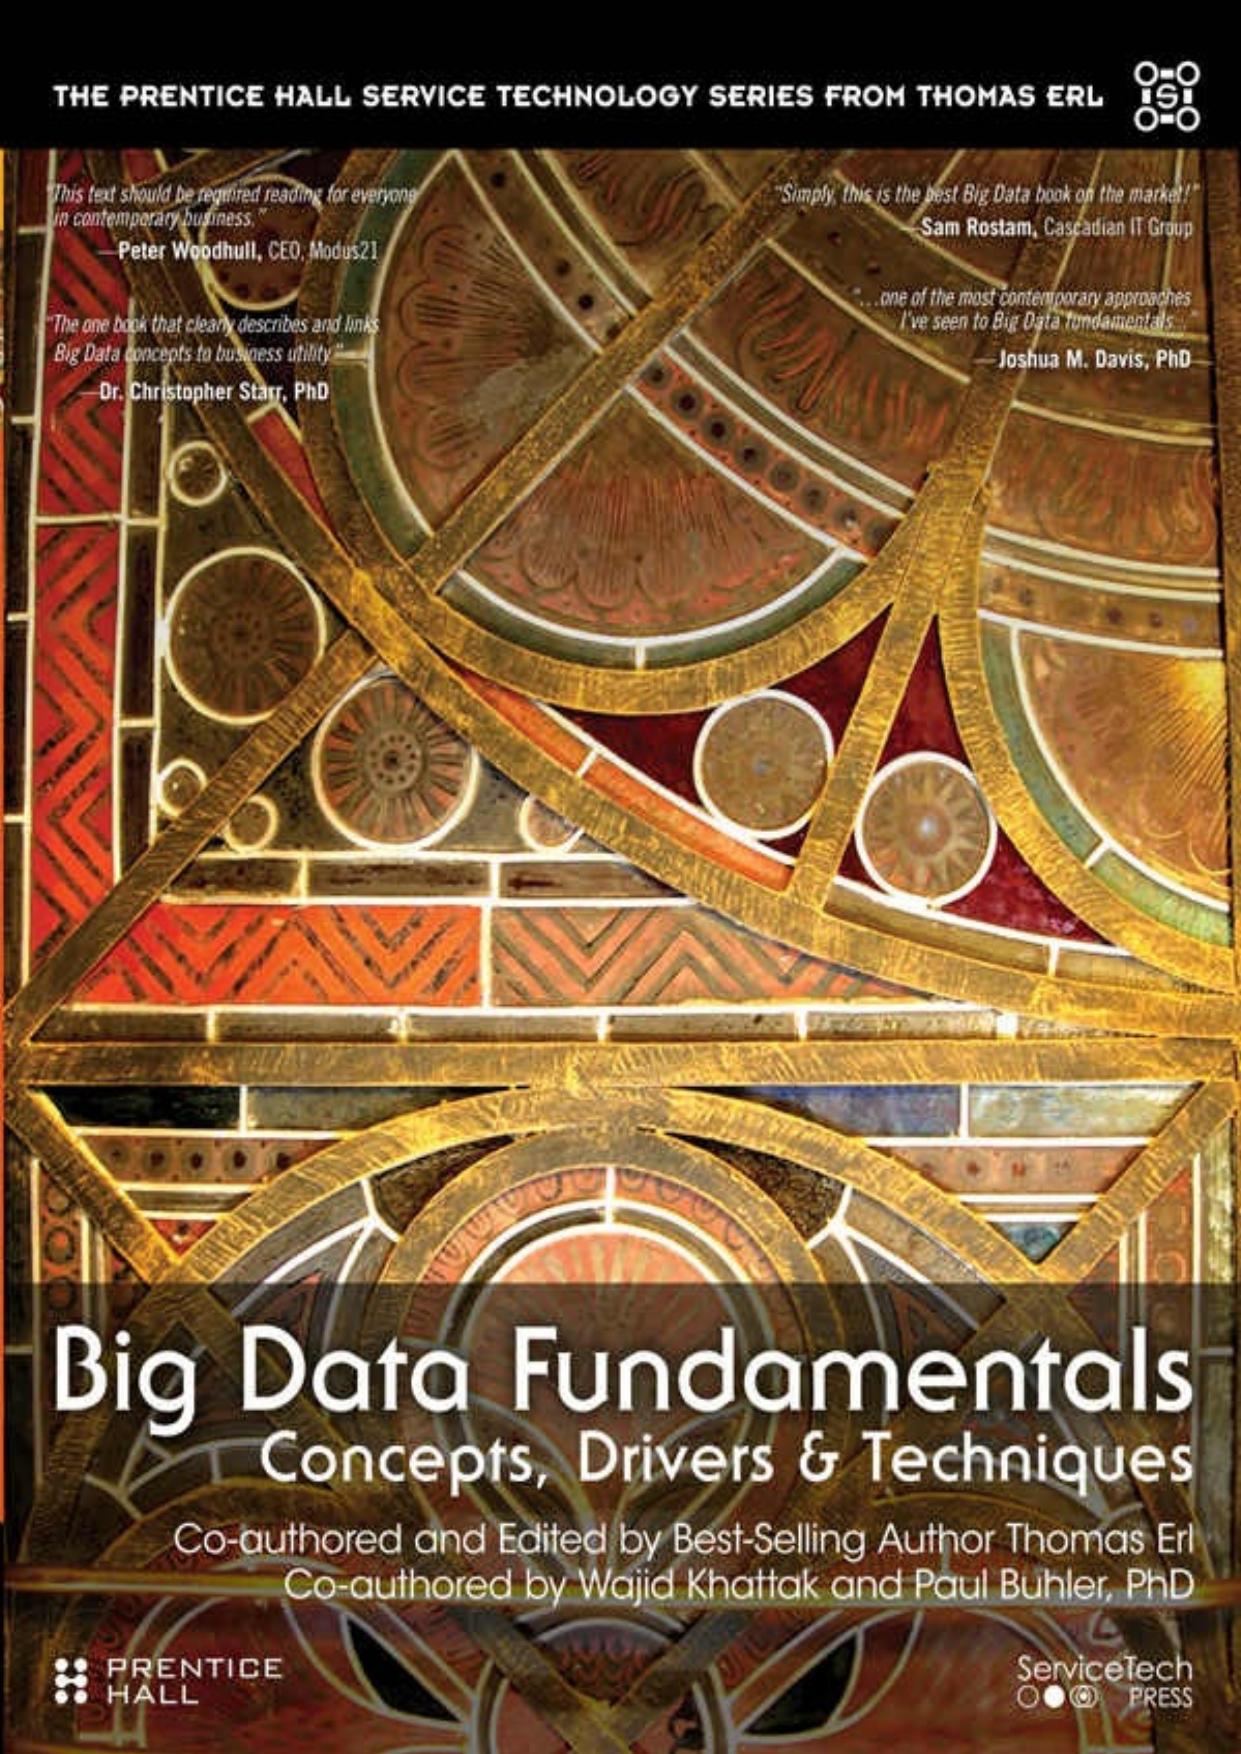 Big Data Fundamentals  Concepts, Drivers & Techniques 2016( PDFDrive.com )